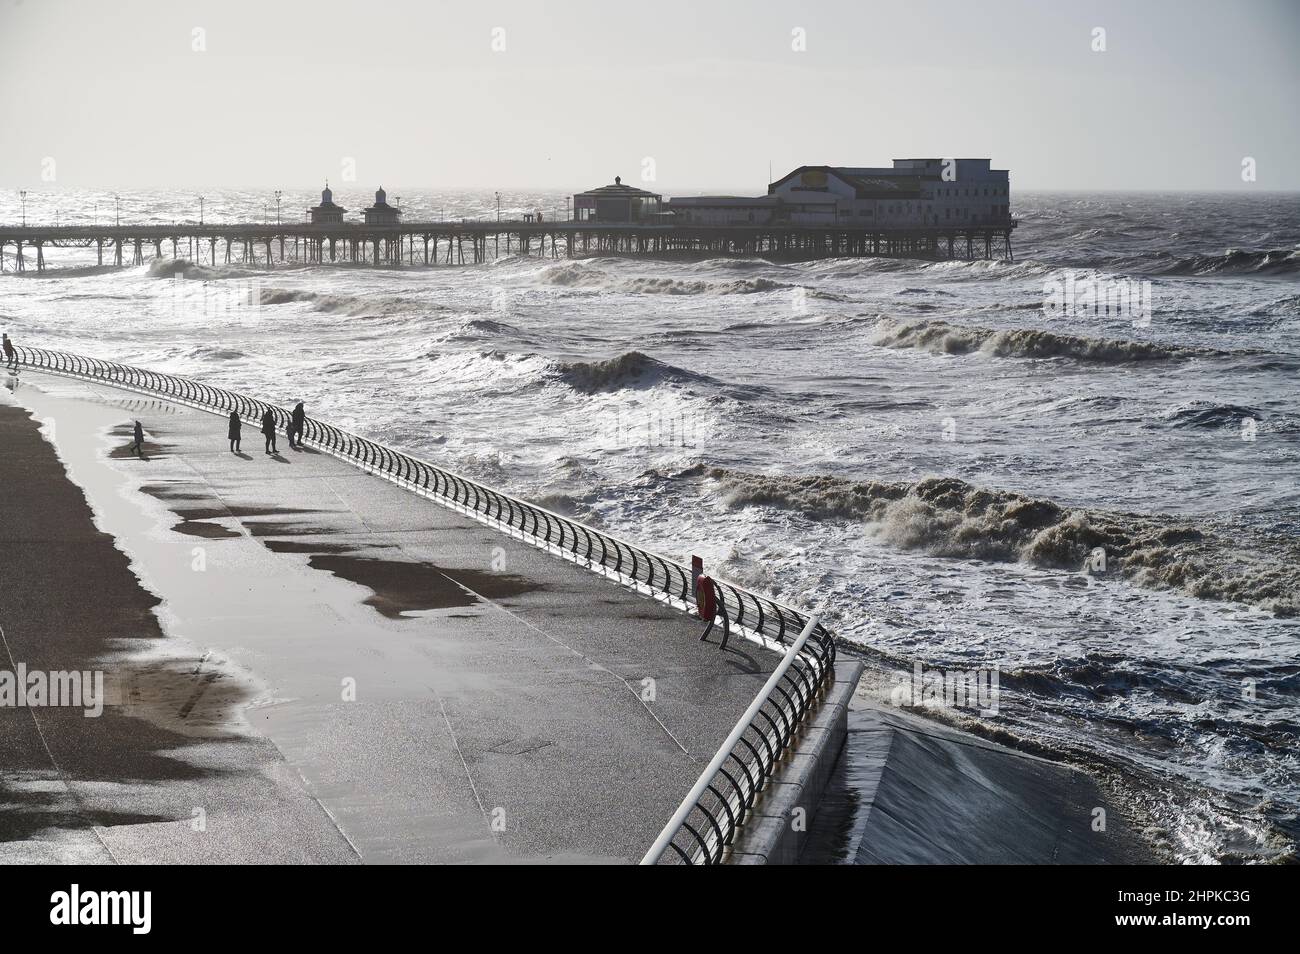 Il sole esce mentre la tempesta Franklin passa vicino.le onde si infrangono contro il muro di mare in una giornata di tempesta a Blackpool Foto Stock